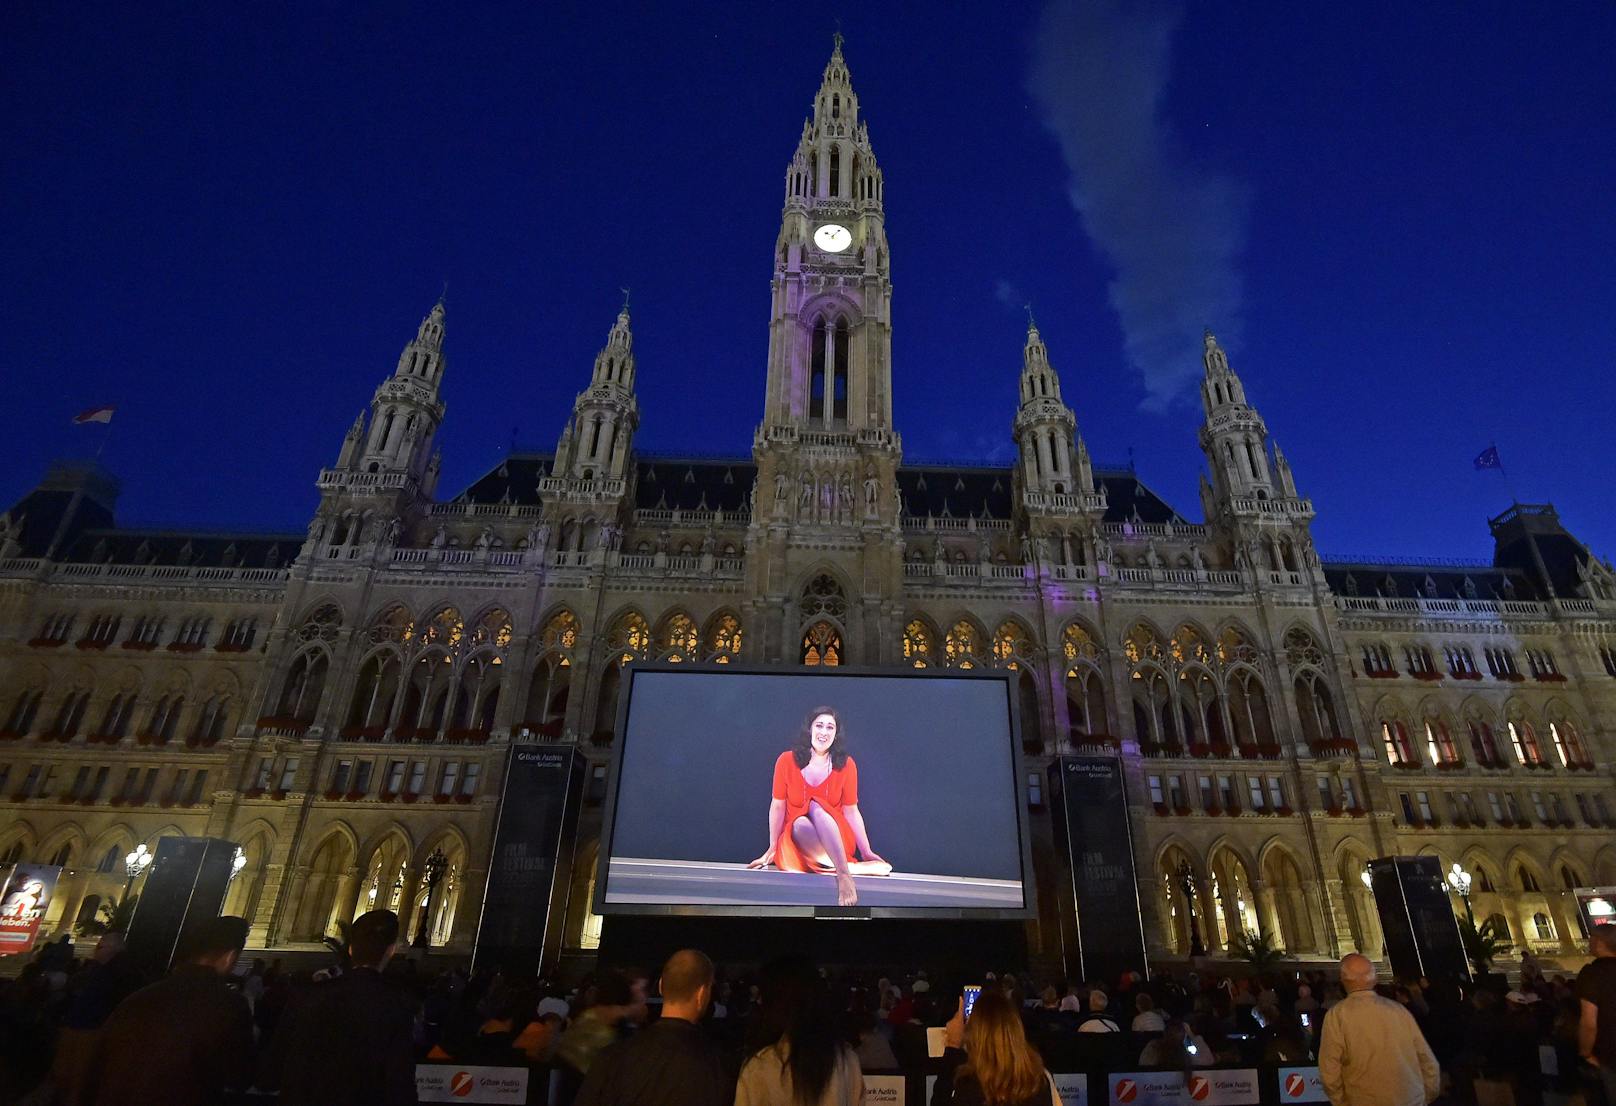 Das Film Festival am Wiener Rathausplatz feiert heuer seinen 30. Geburtstag. Zum Jubiläum verspricht der Veranstalter nicht weniger als ein "Programm der Superlative" und "Lebensfreude pur".